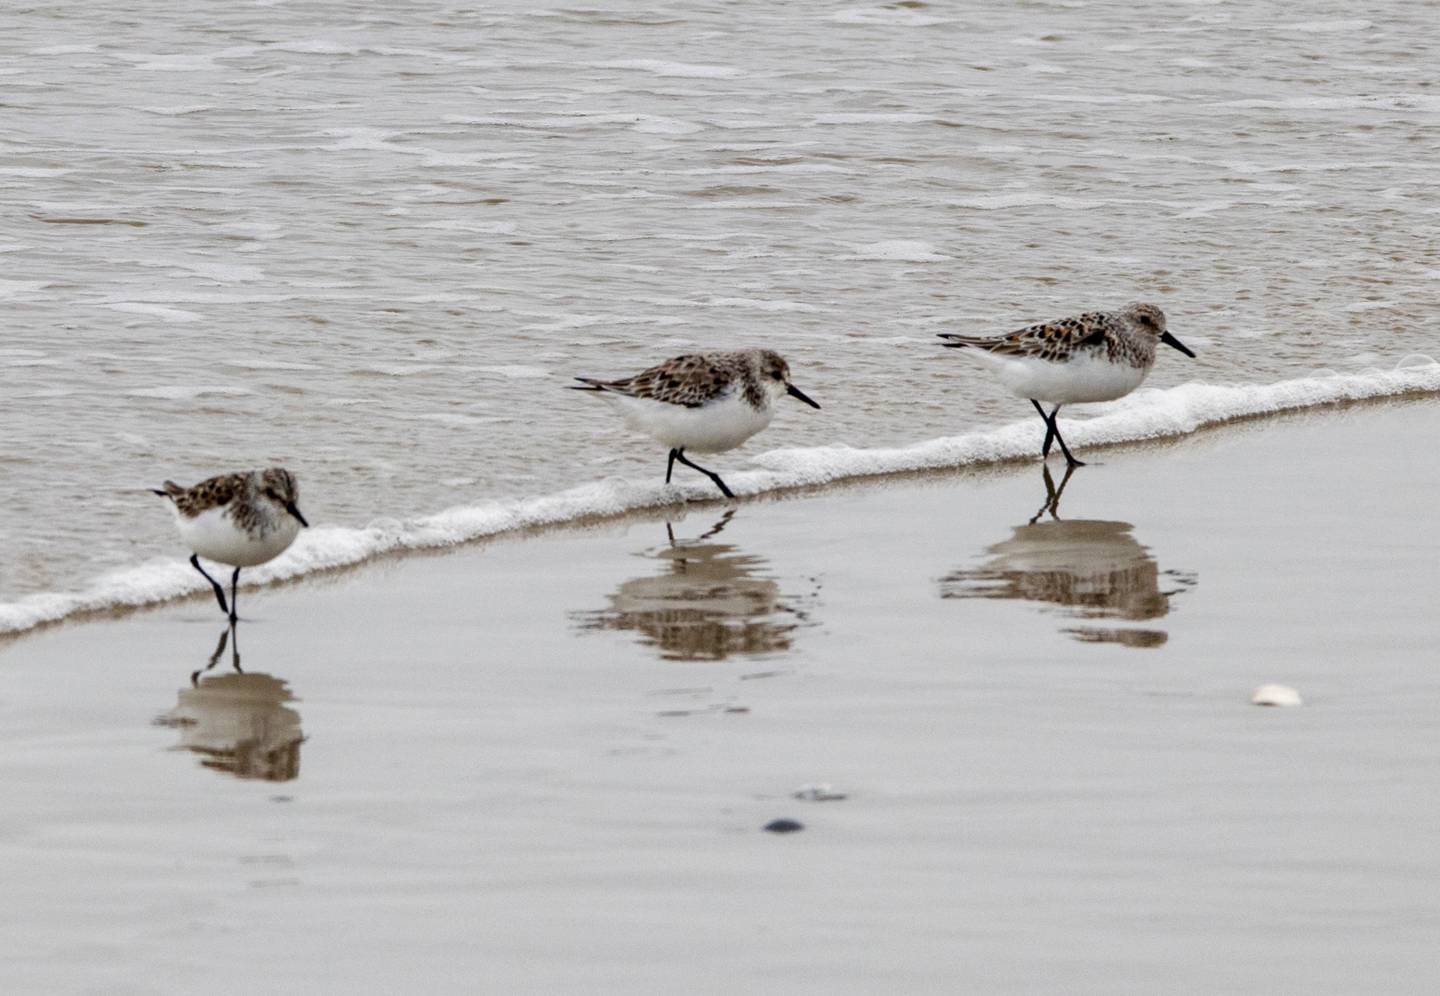 Three sanderlings by the water's edge